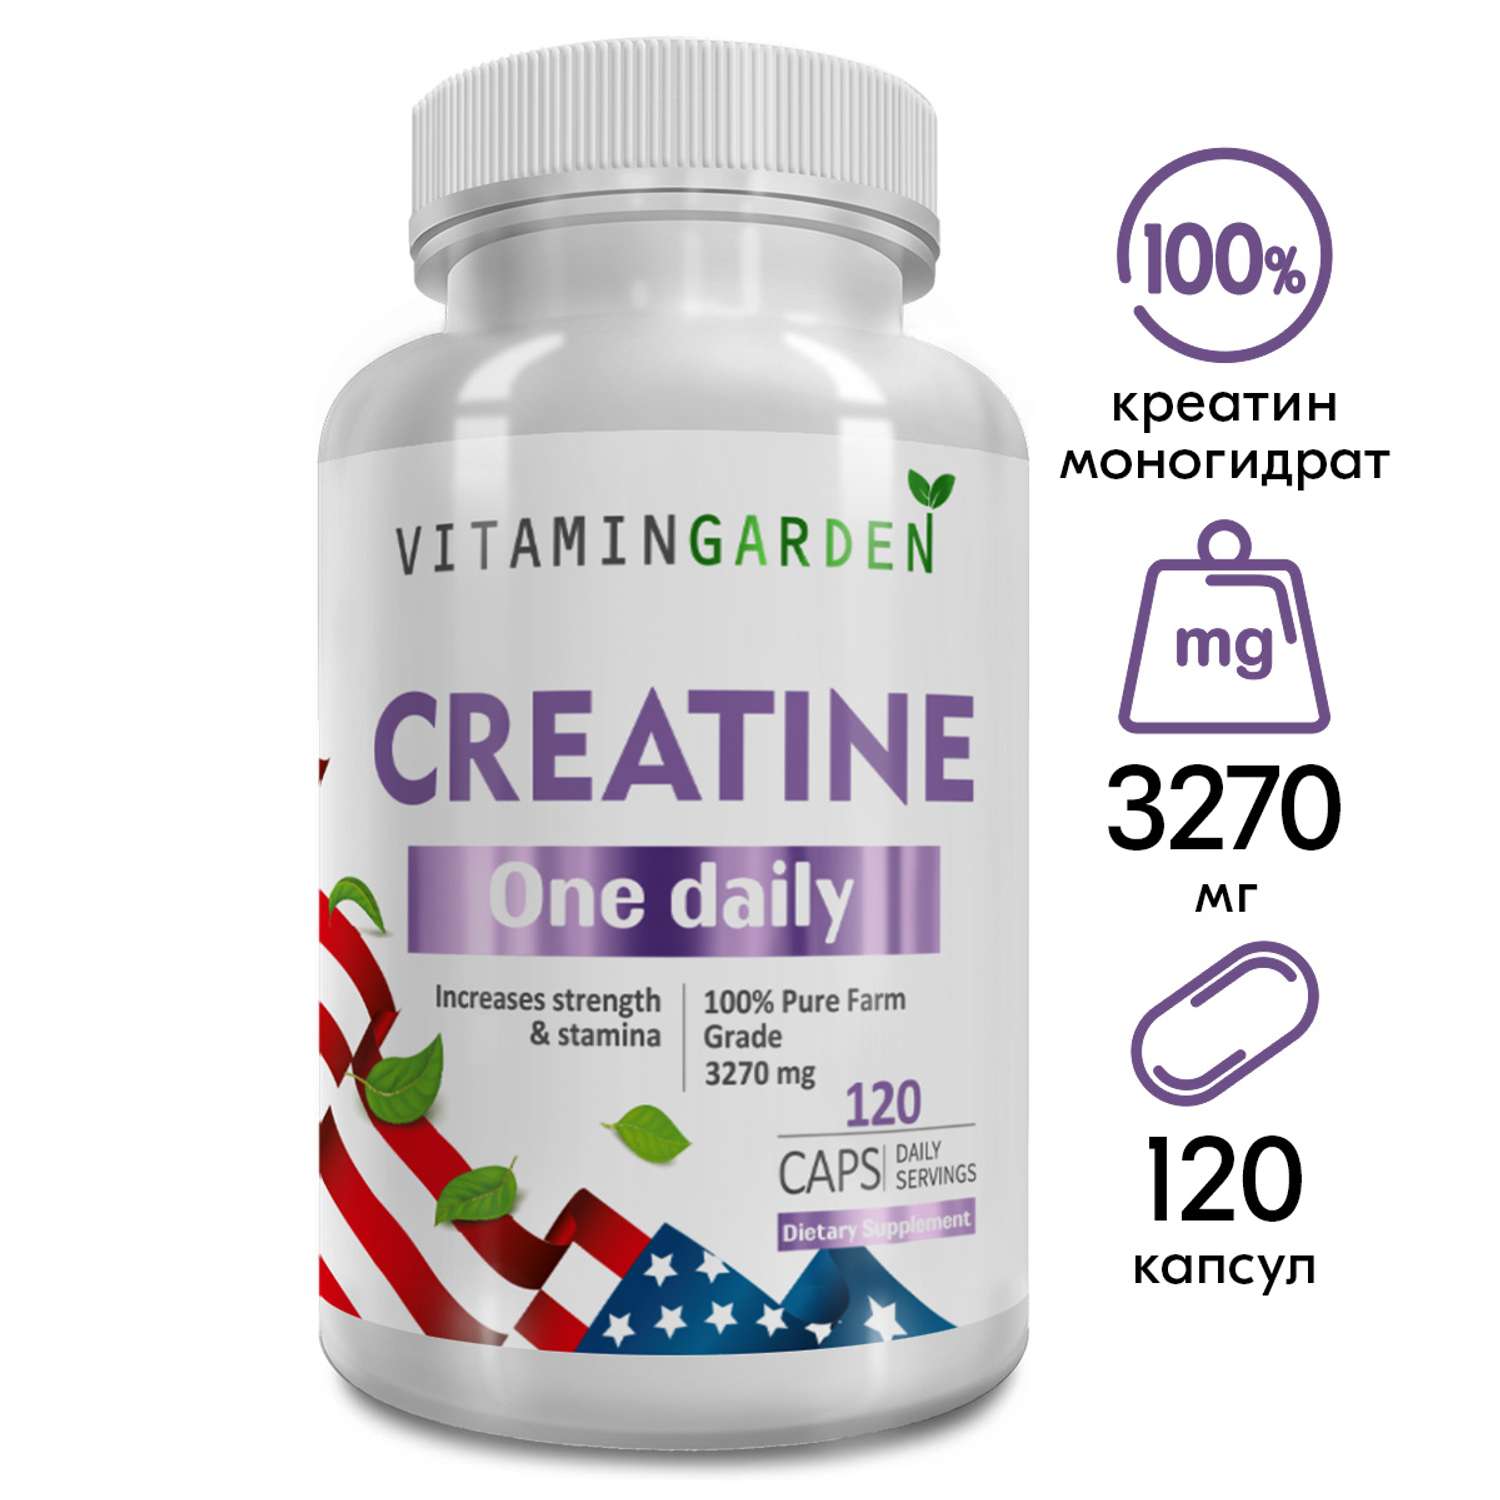 Креатин моногидрат 3270 мг VITAMIN GARDEN аминокислота для набора массы и роста мышц без сахара 120 капсул - фото 1